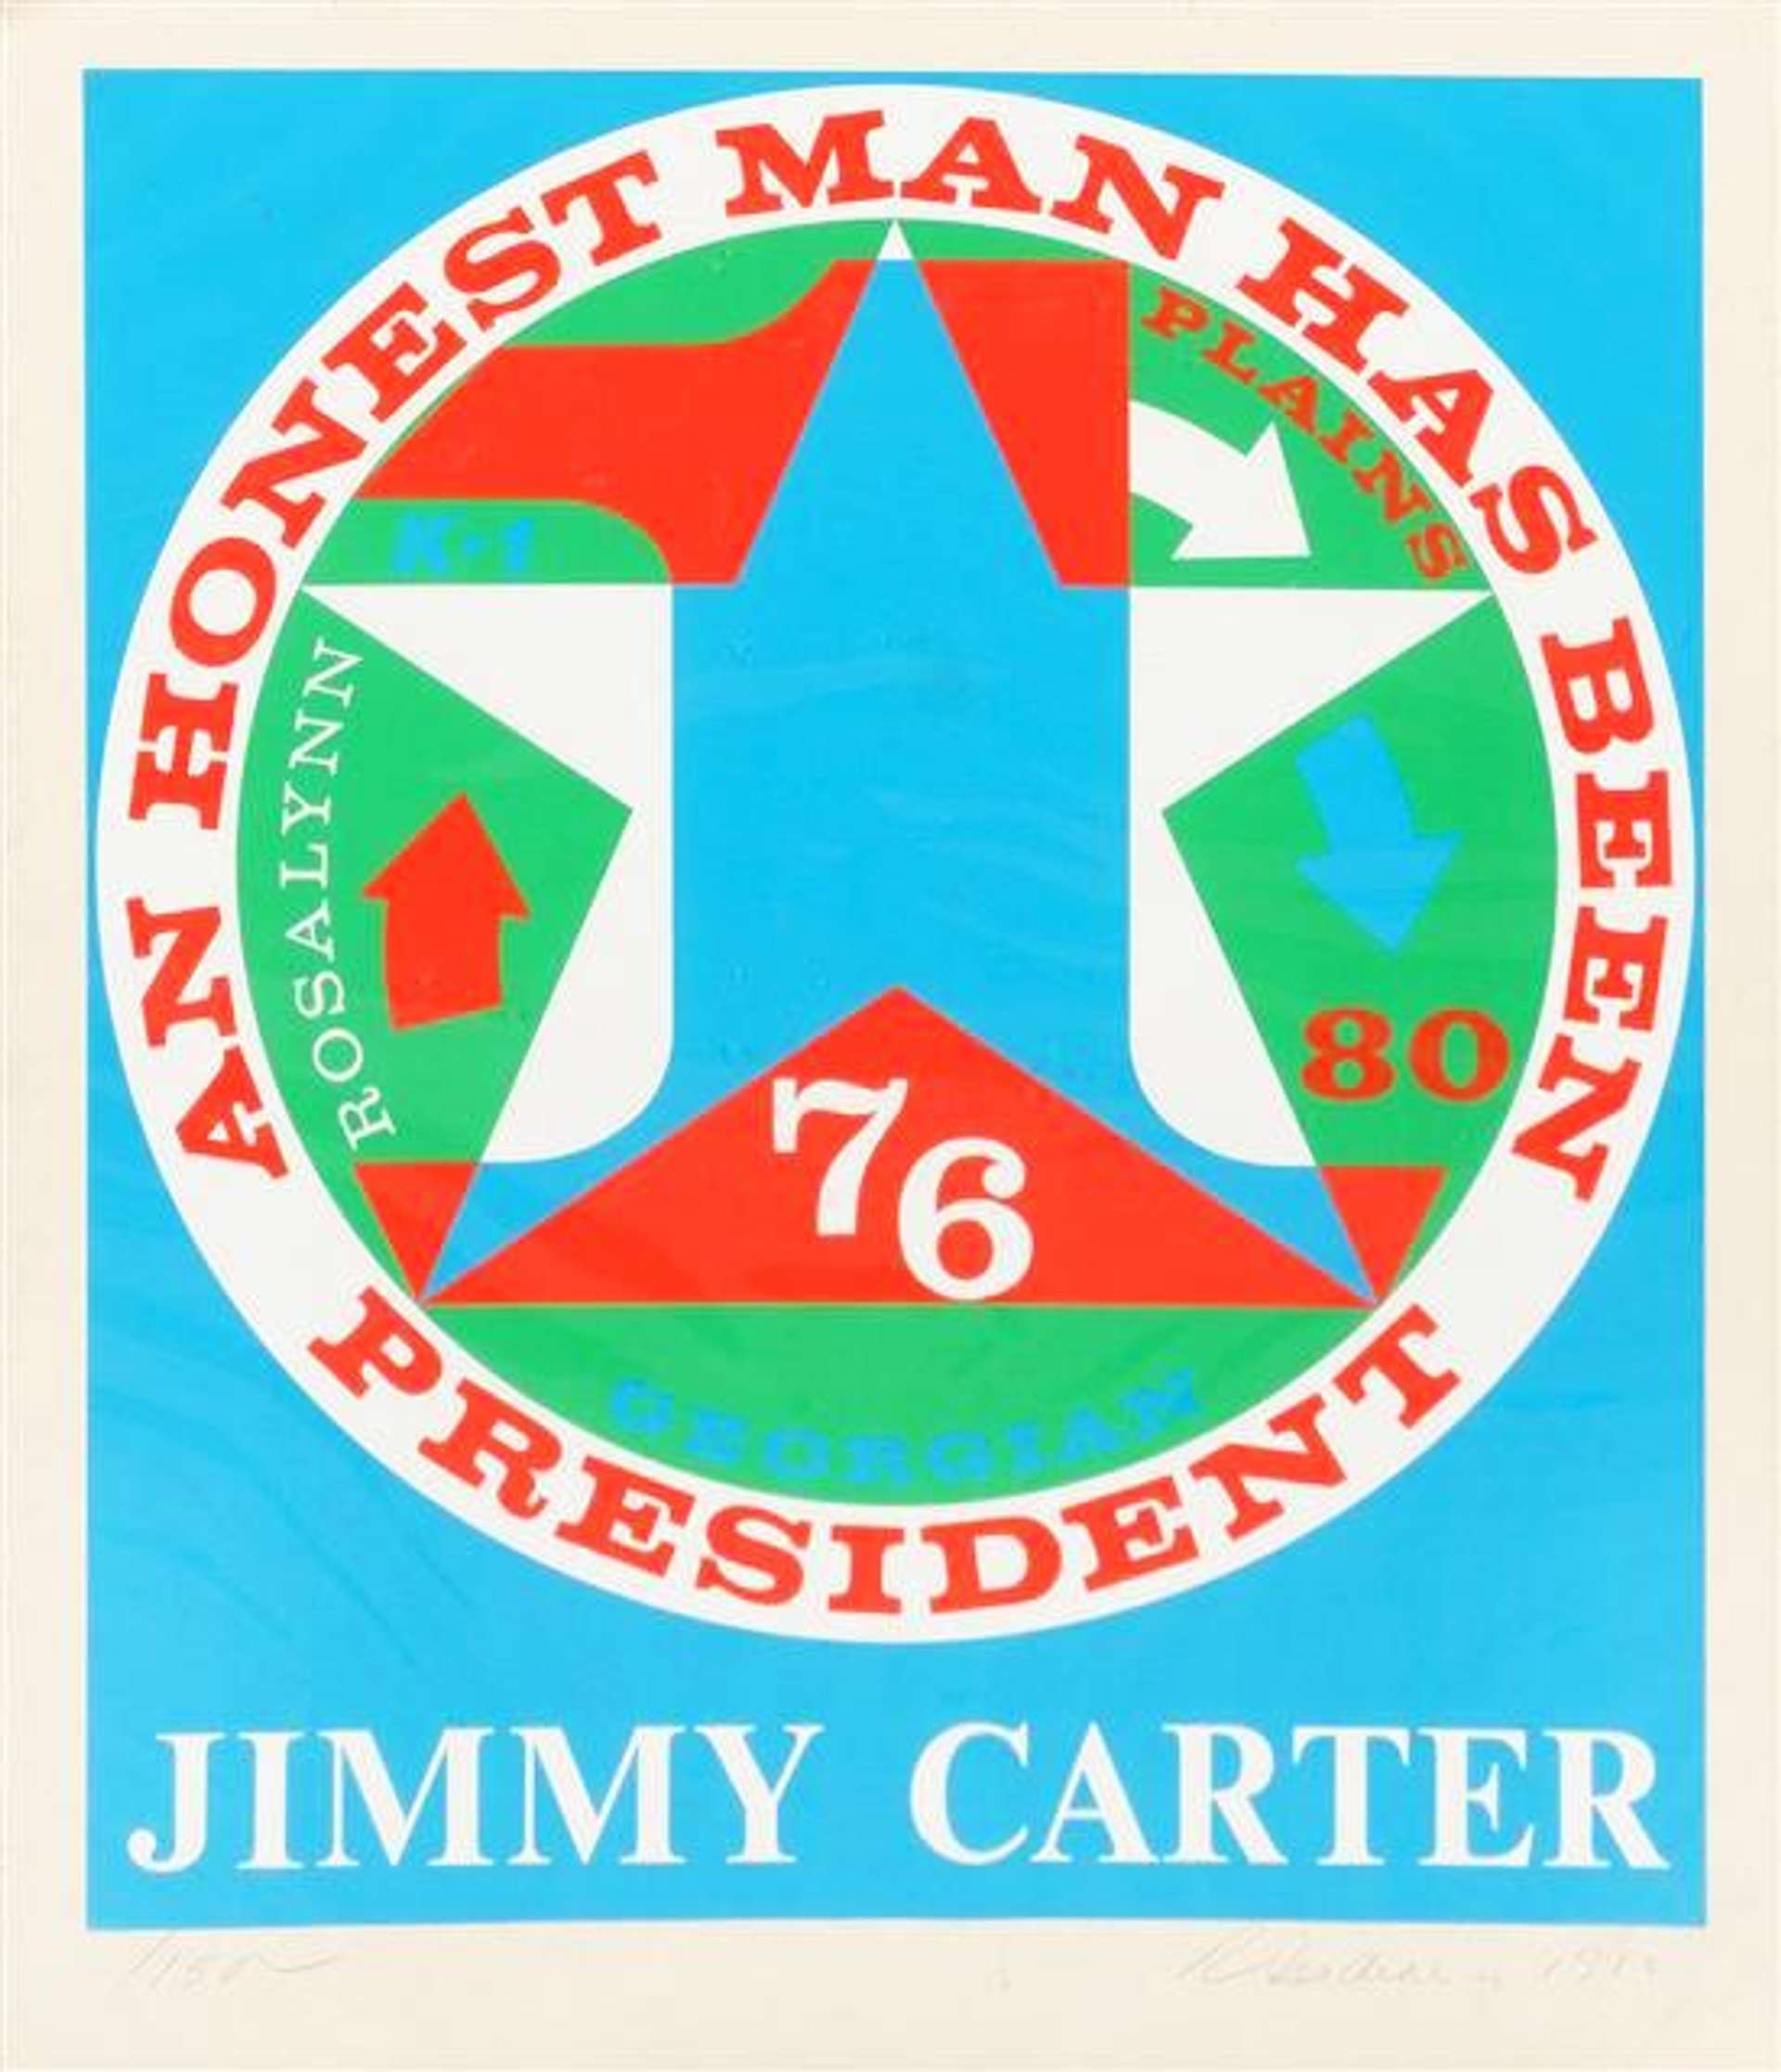 An Honest Man Has Been President: A Portrait Of Jimmy Carter - Signed Print by Robert Indiana 1980 - MyArtBroker